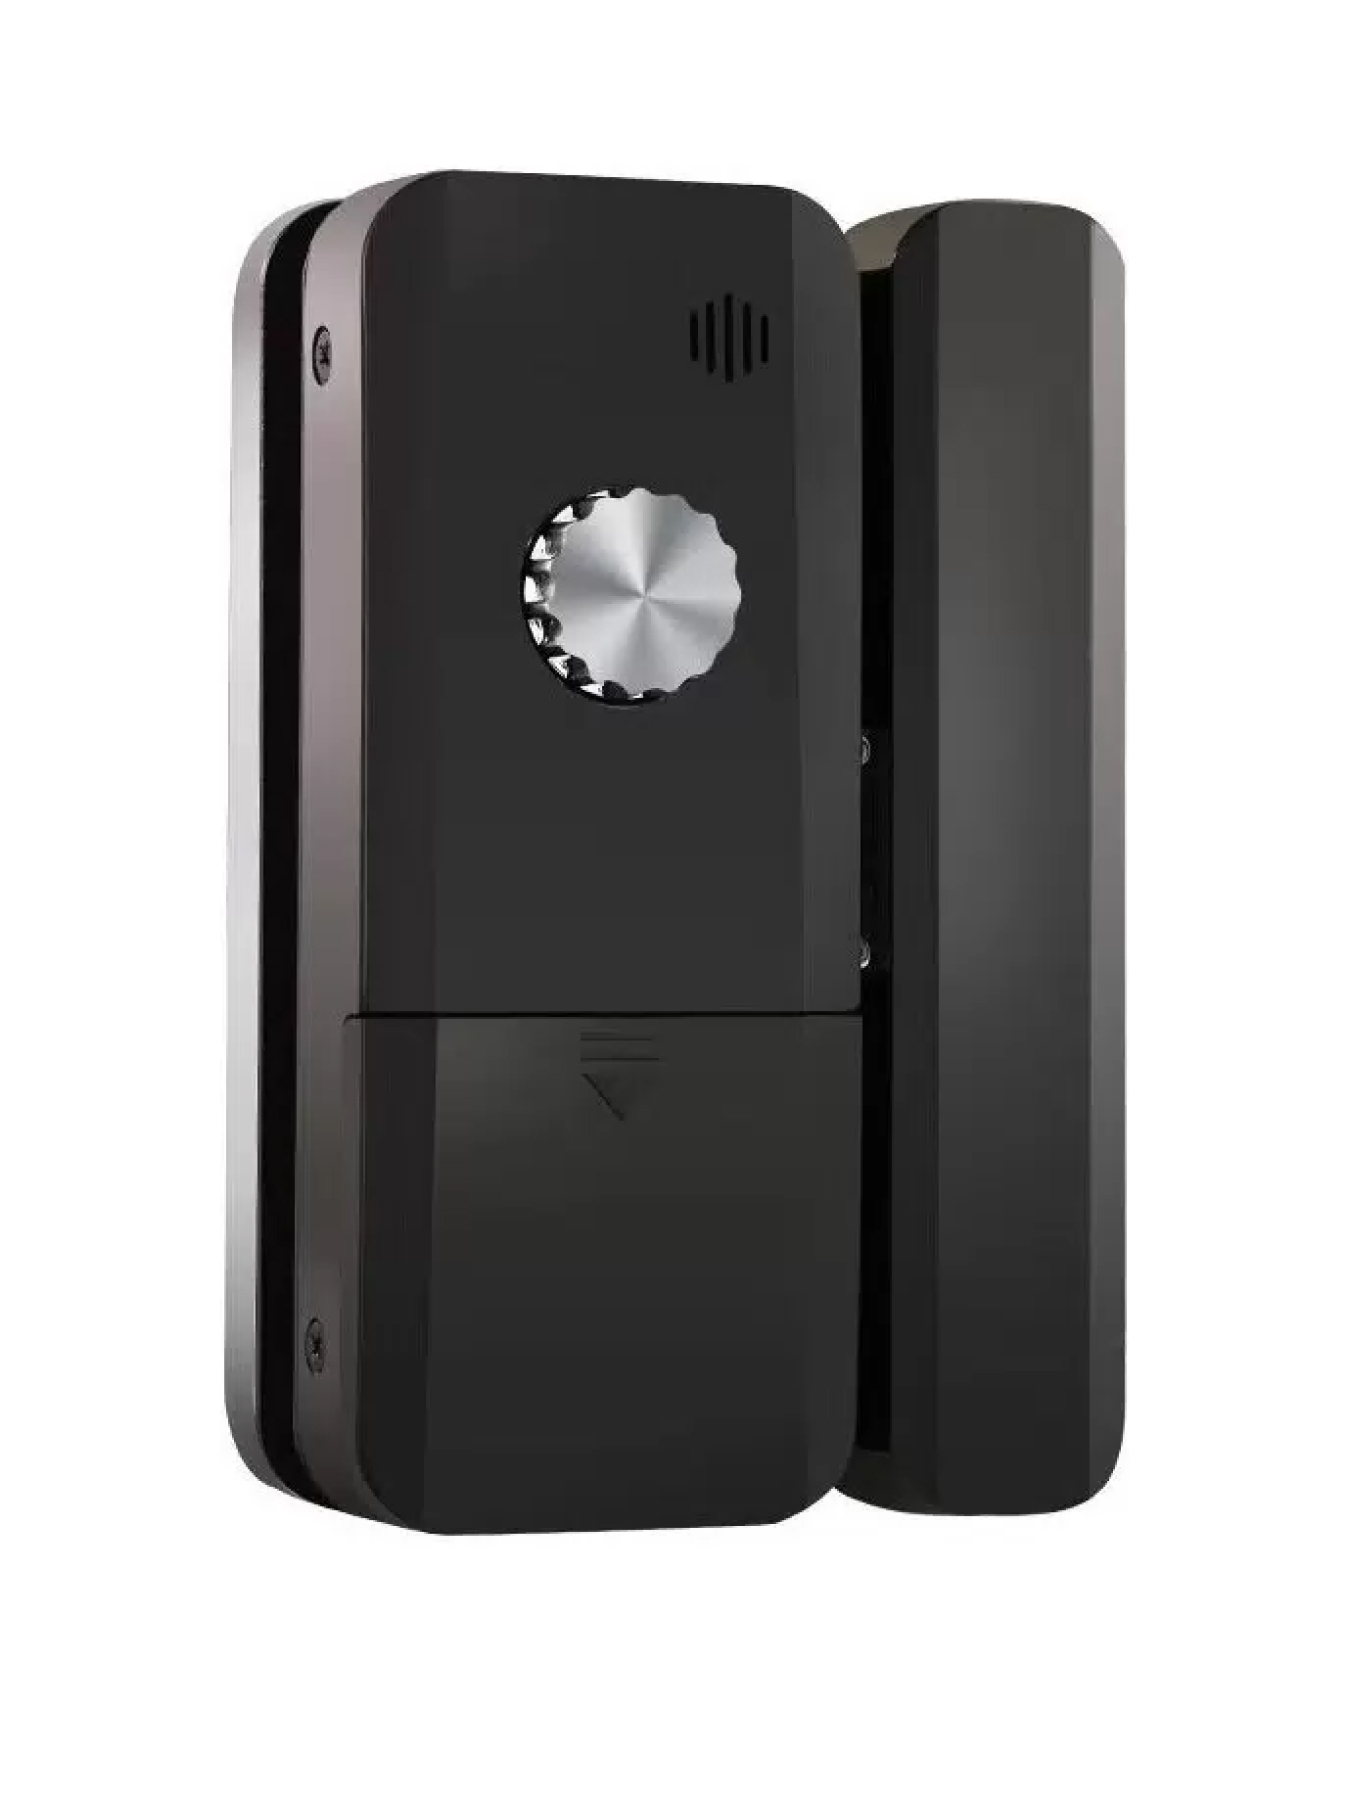 фото Дверной электронный замок safeburg smart glazz black для стеклянных дверей